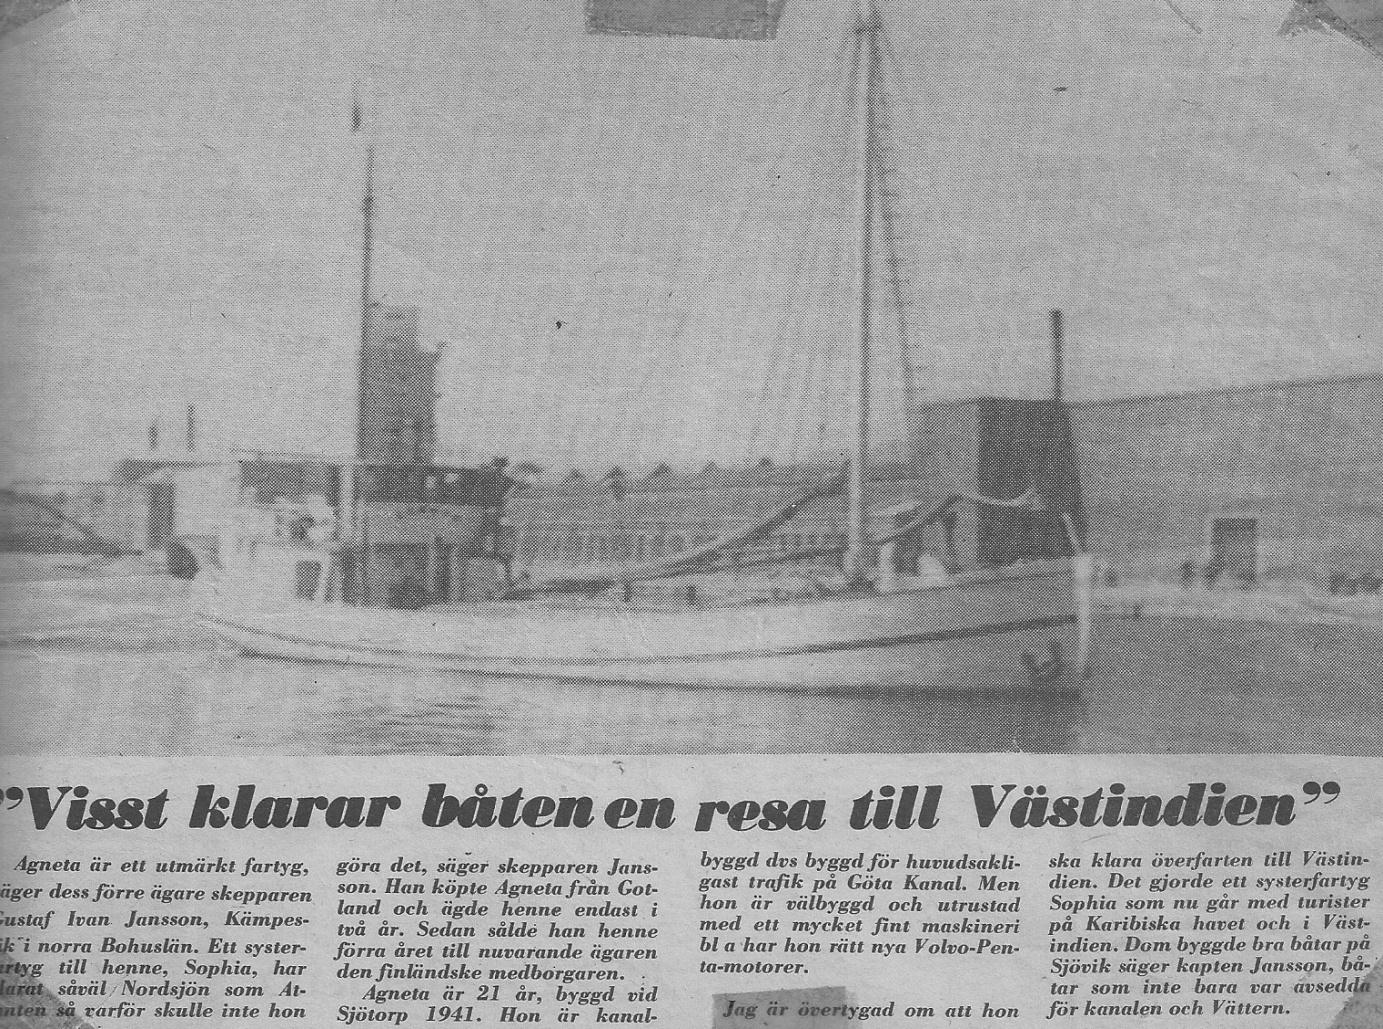 Tidningsutklipp från Aftonbladet 23 augusti 1972 AGNETA i